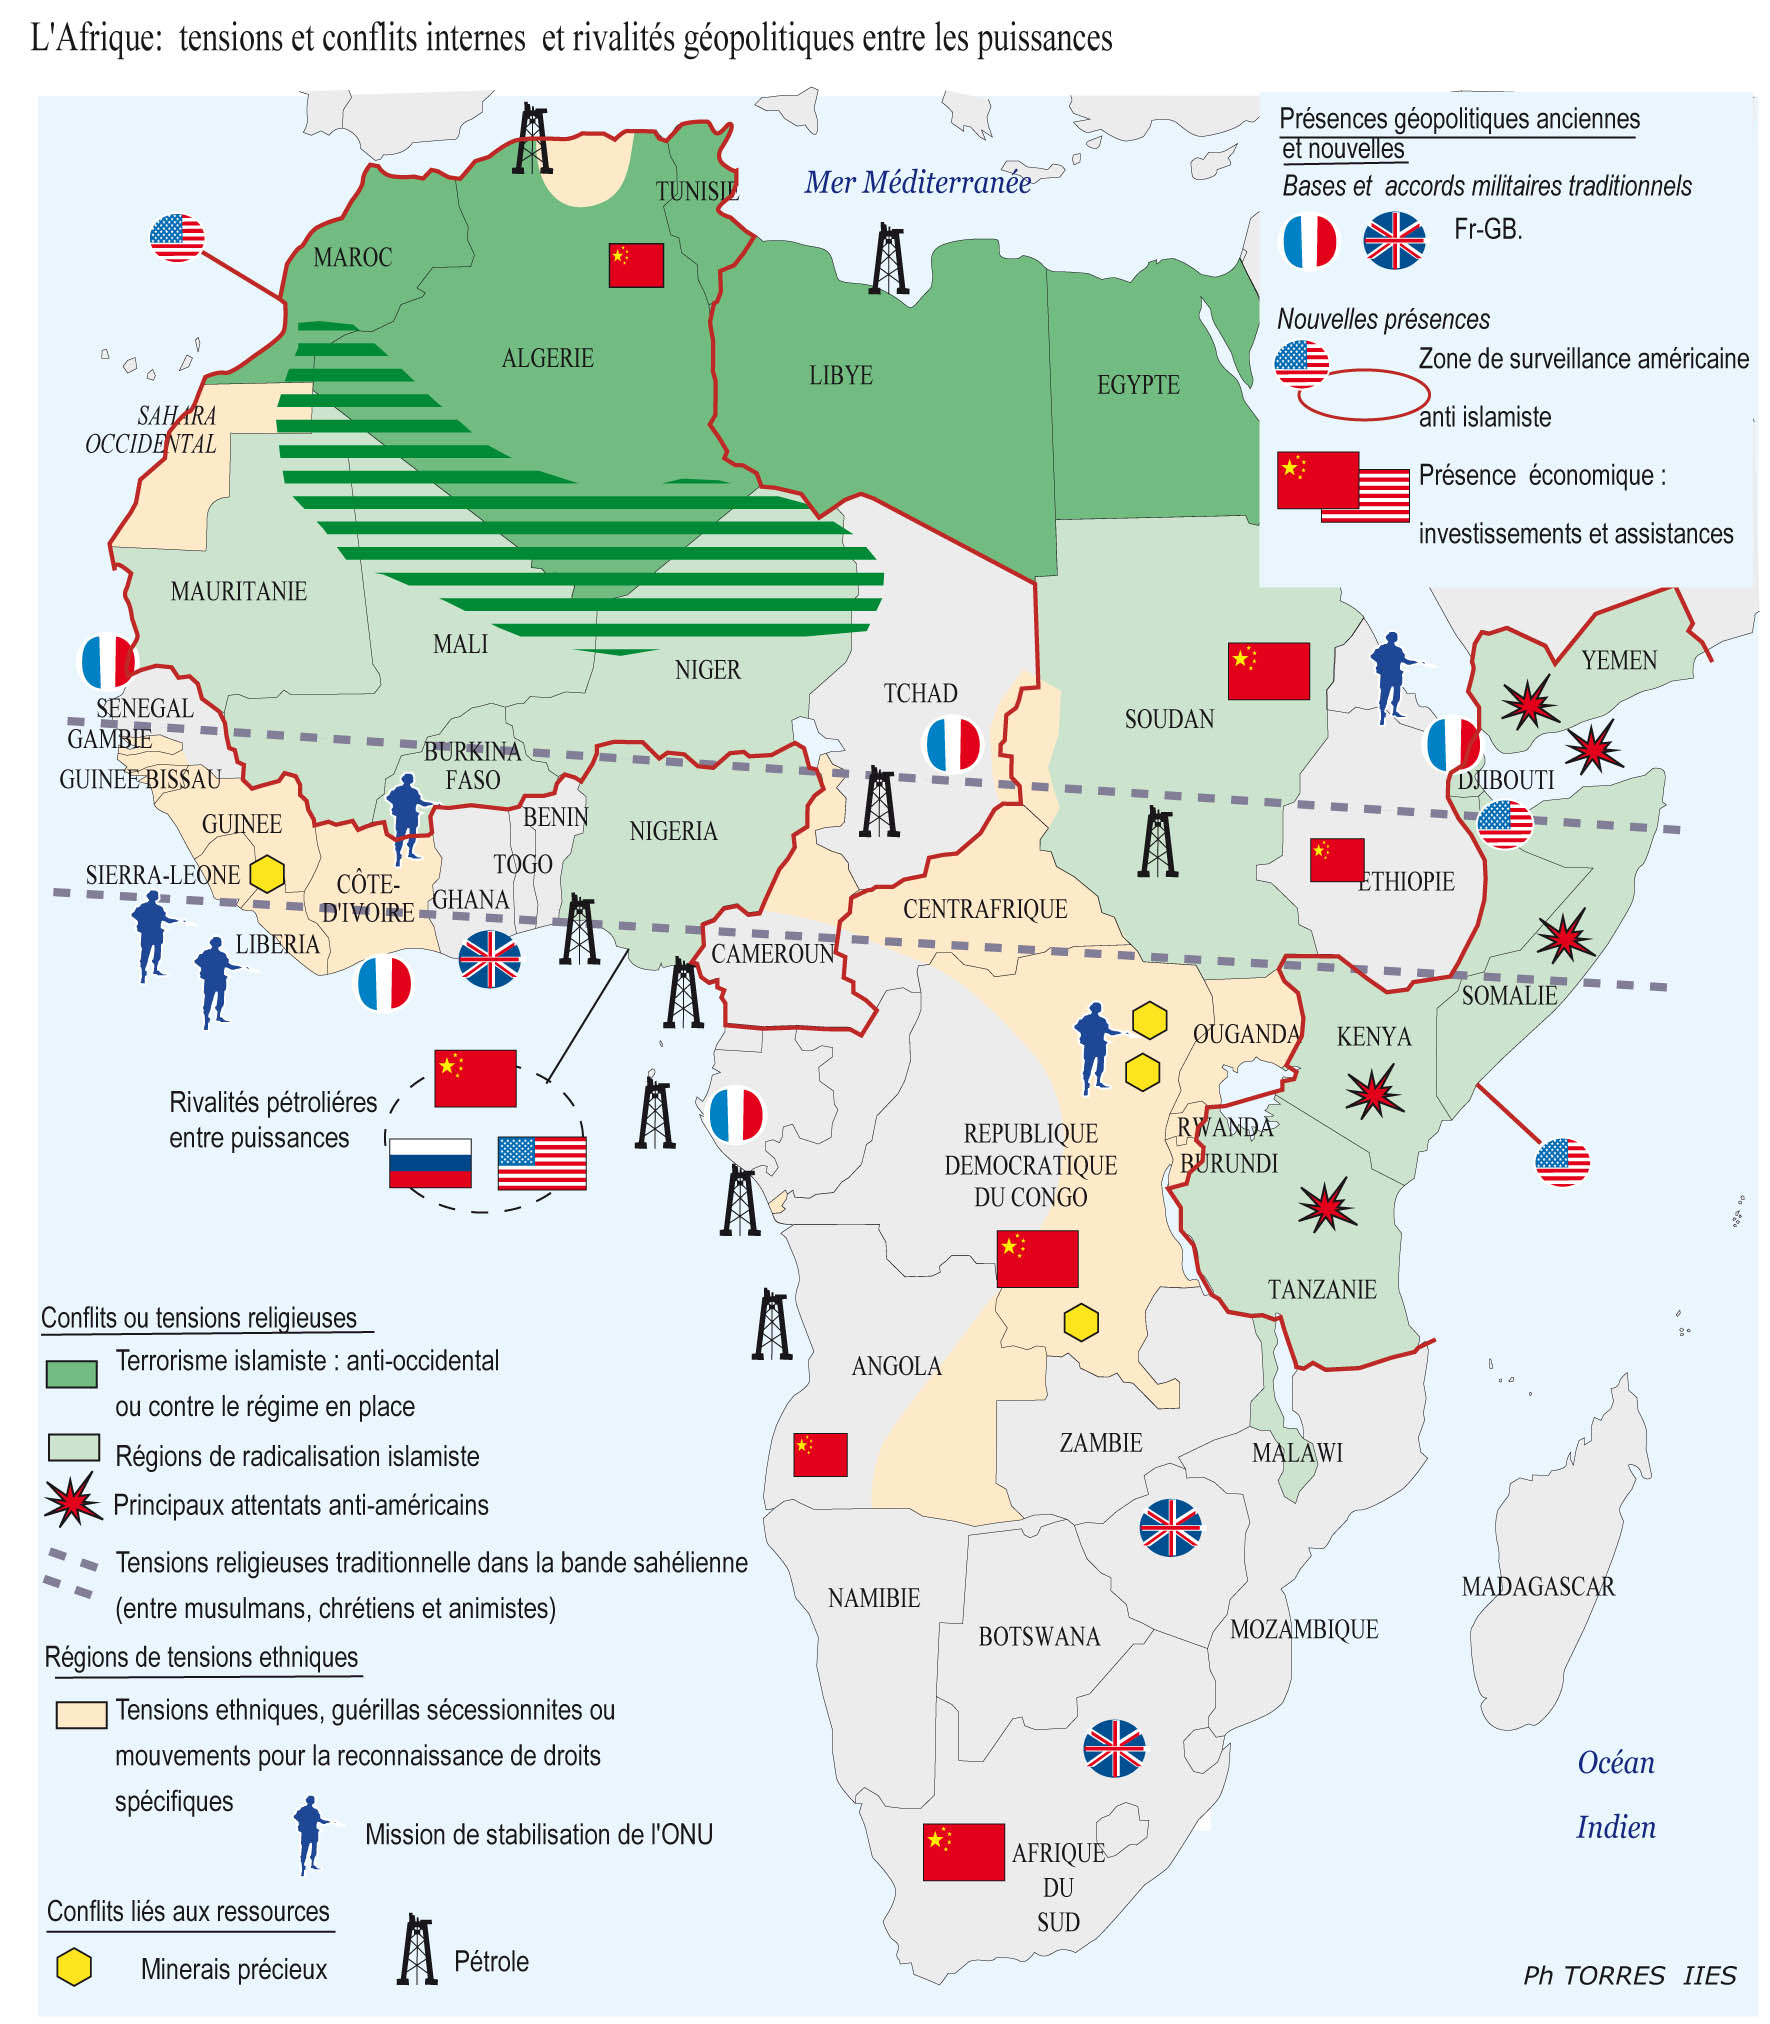 CONFLITS ET RIVALITÉS GÉOPOLITIQUES EN AFRIQUE